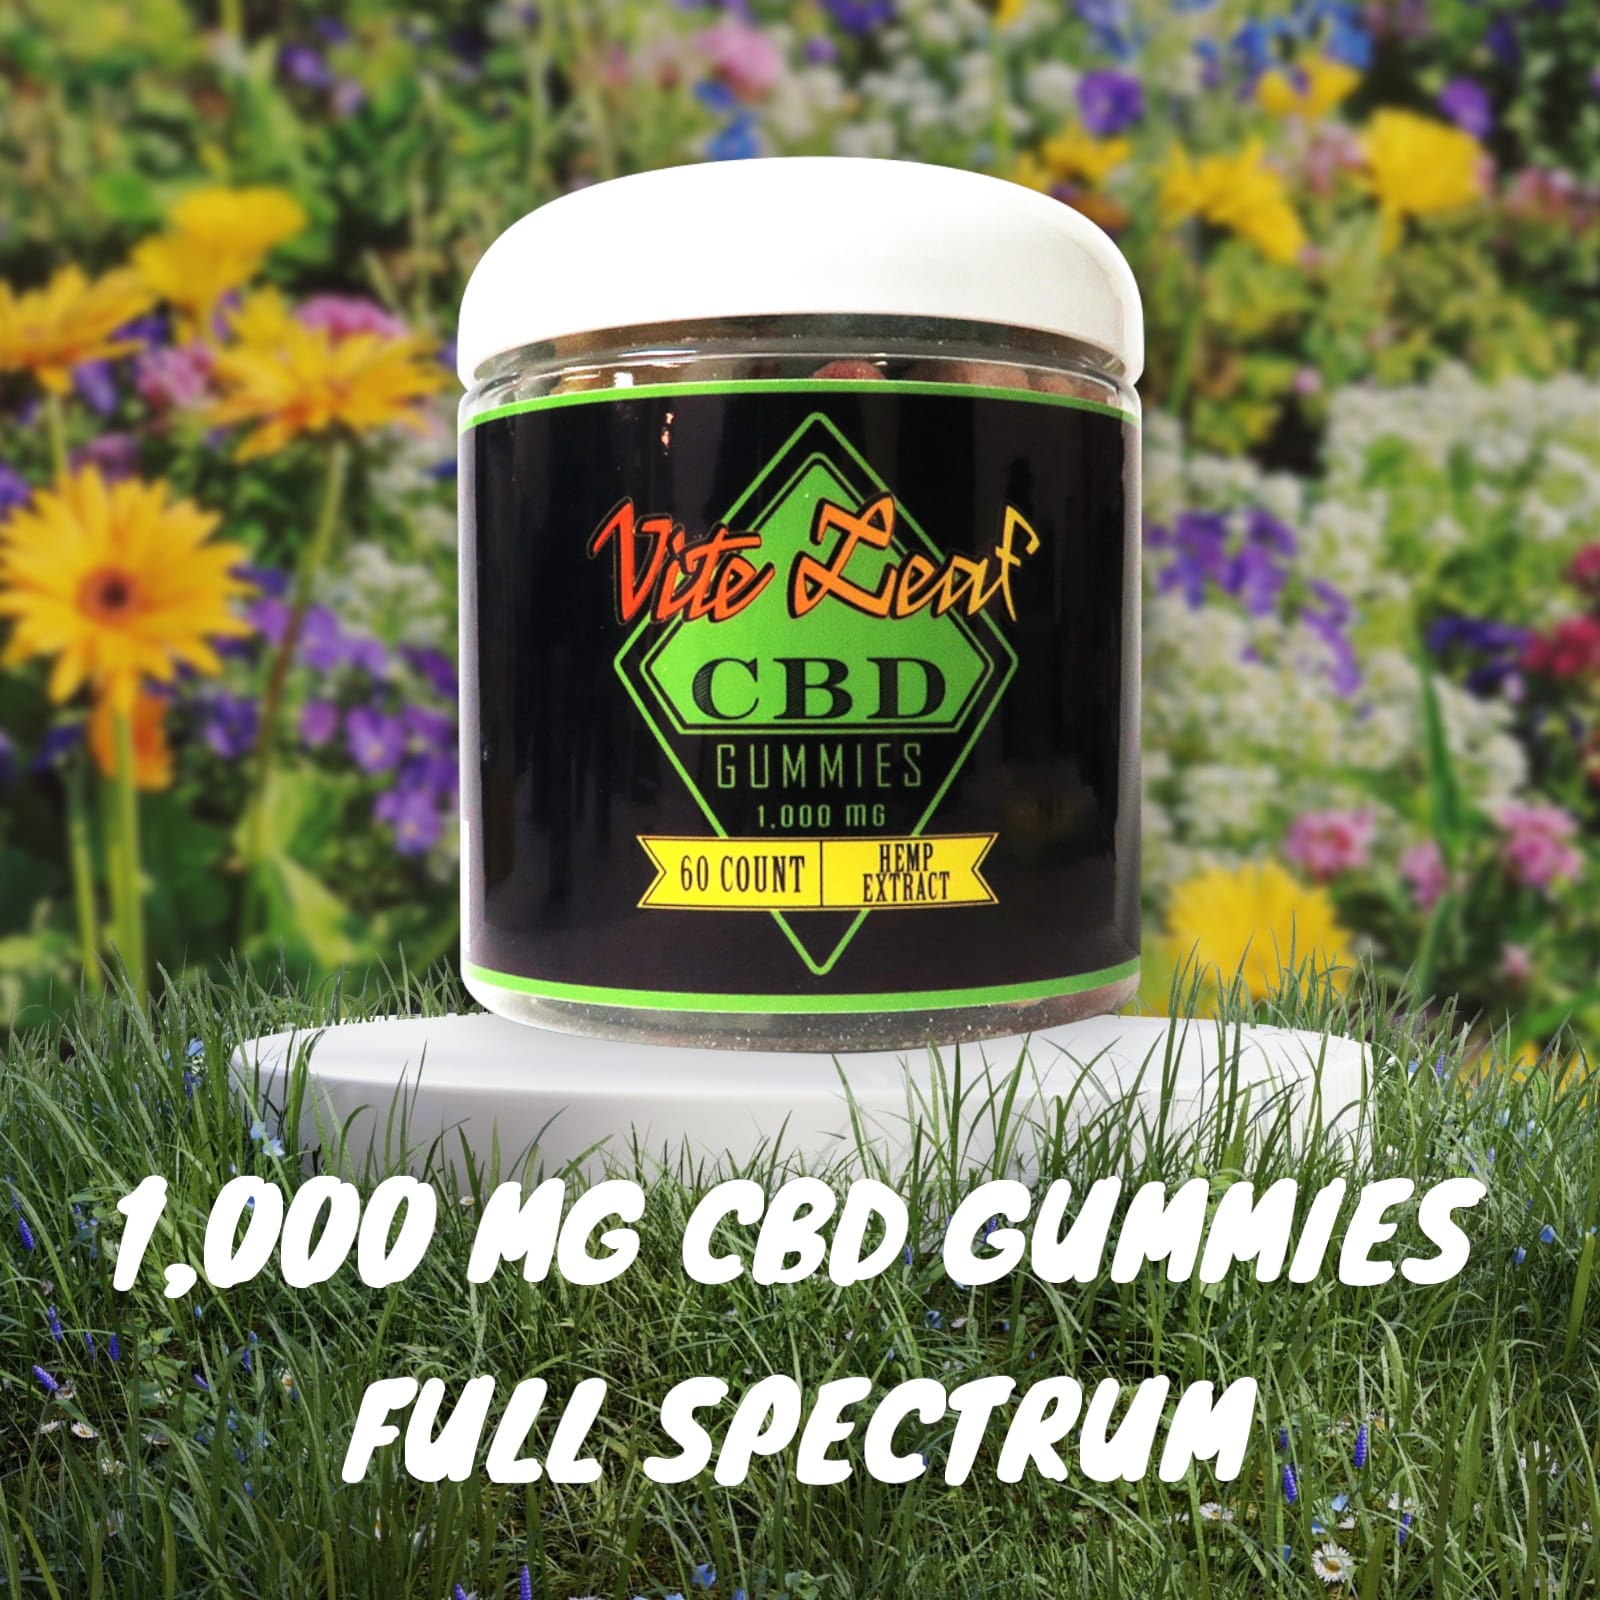 Full spectrum CBD gummies